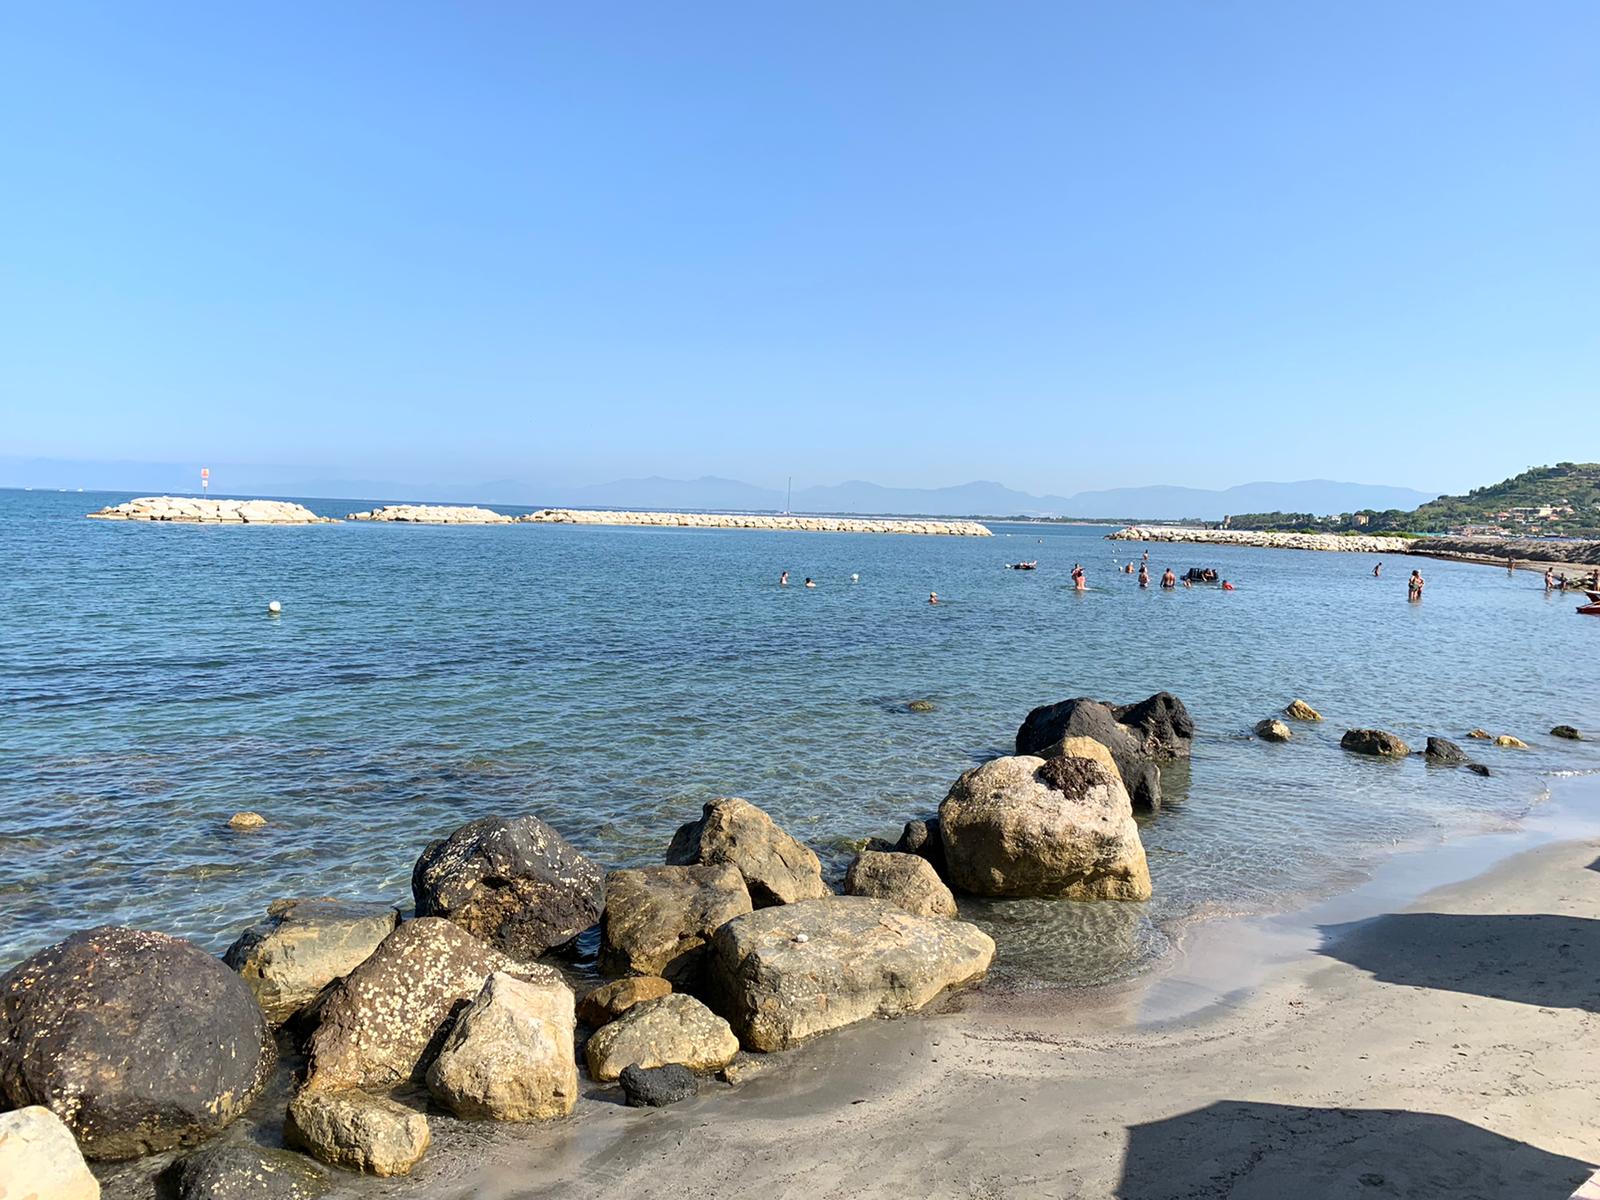 Agropoli beach'in fotoğrafı kahverengi kum yüzey ile